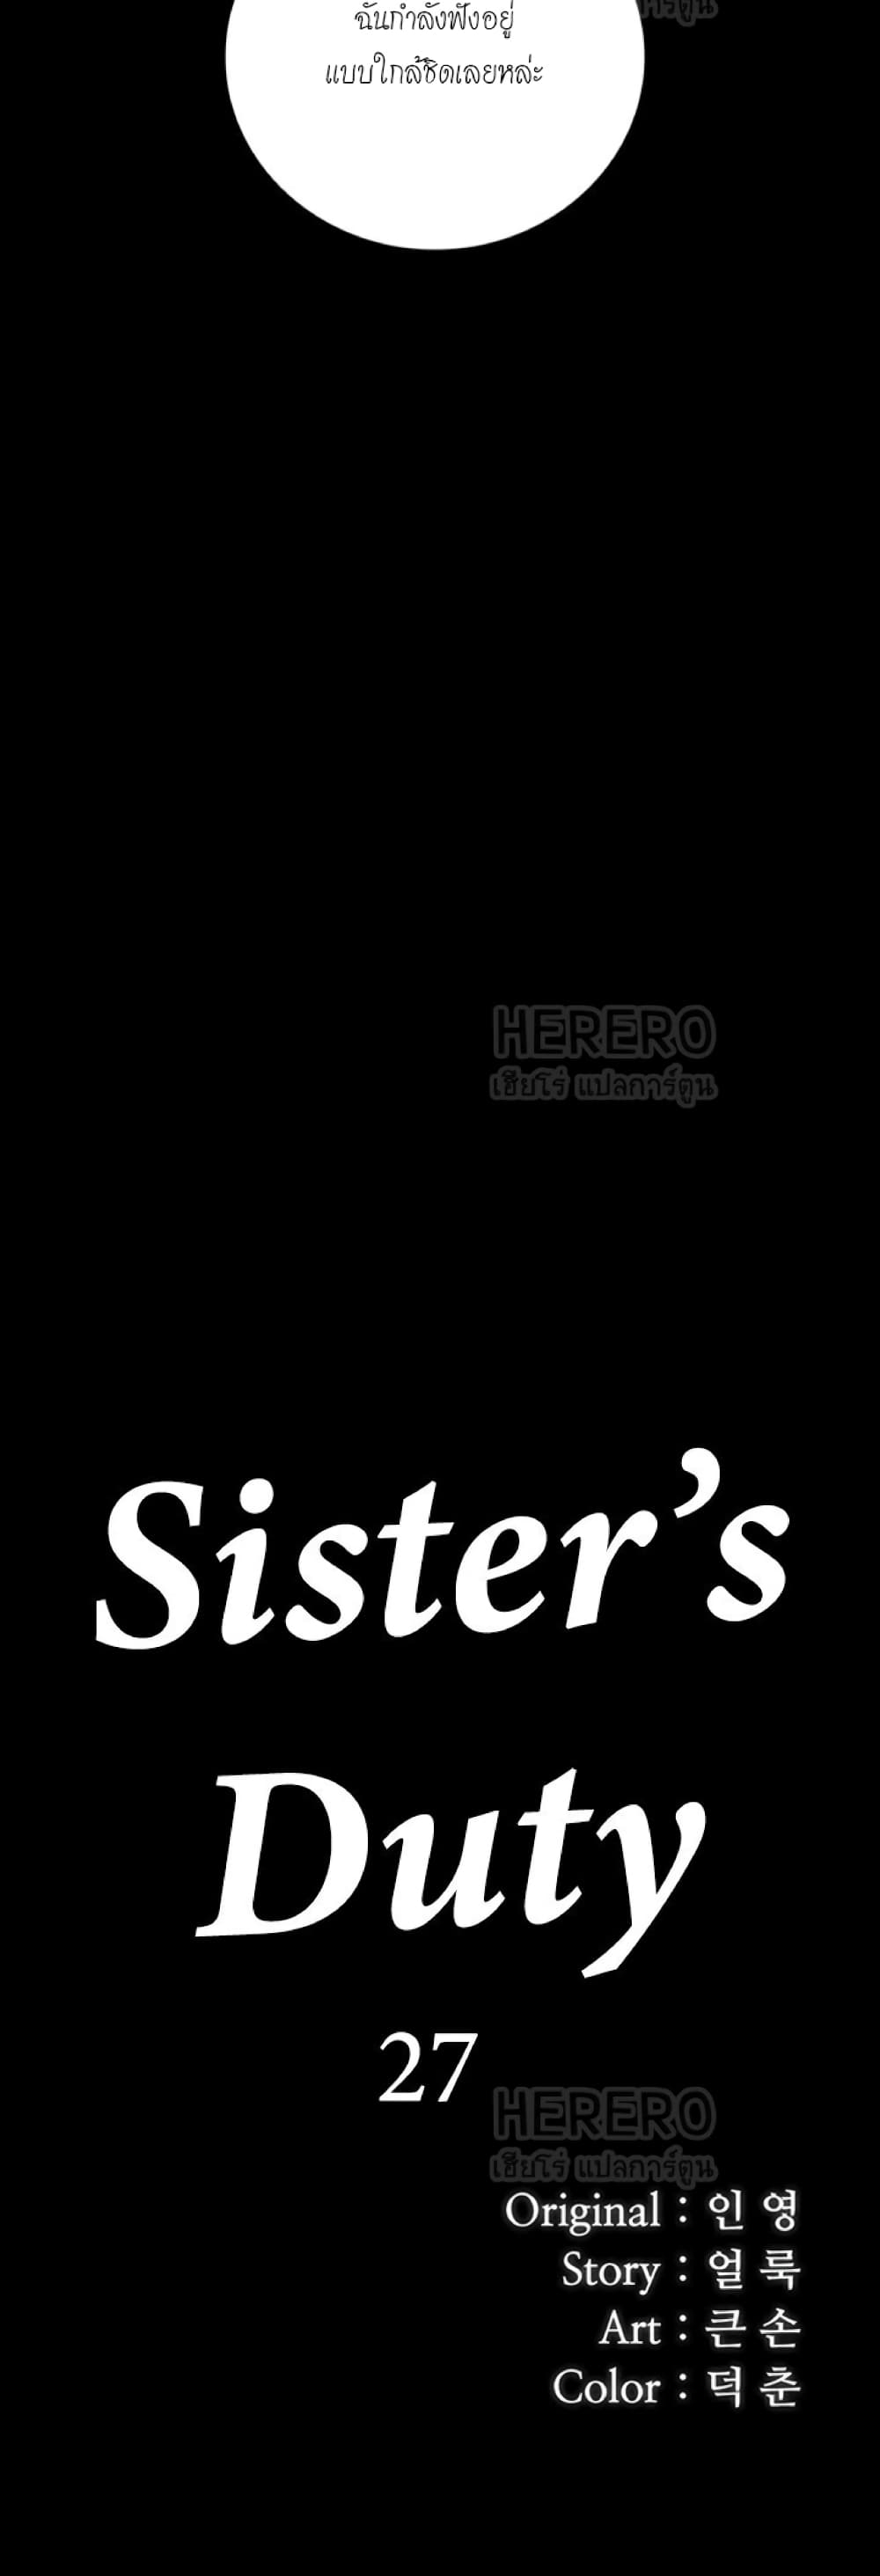 Sister's Duty 27-27